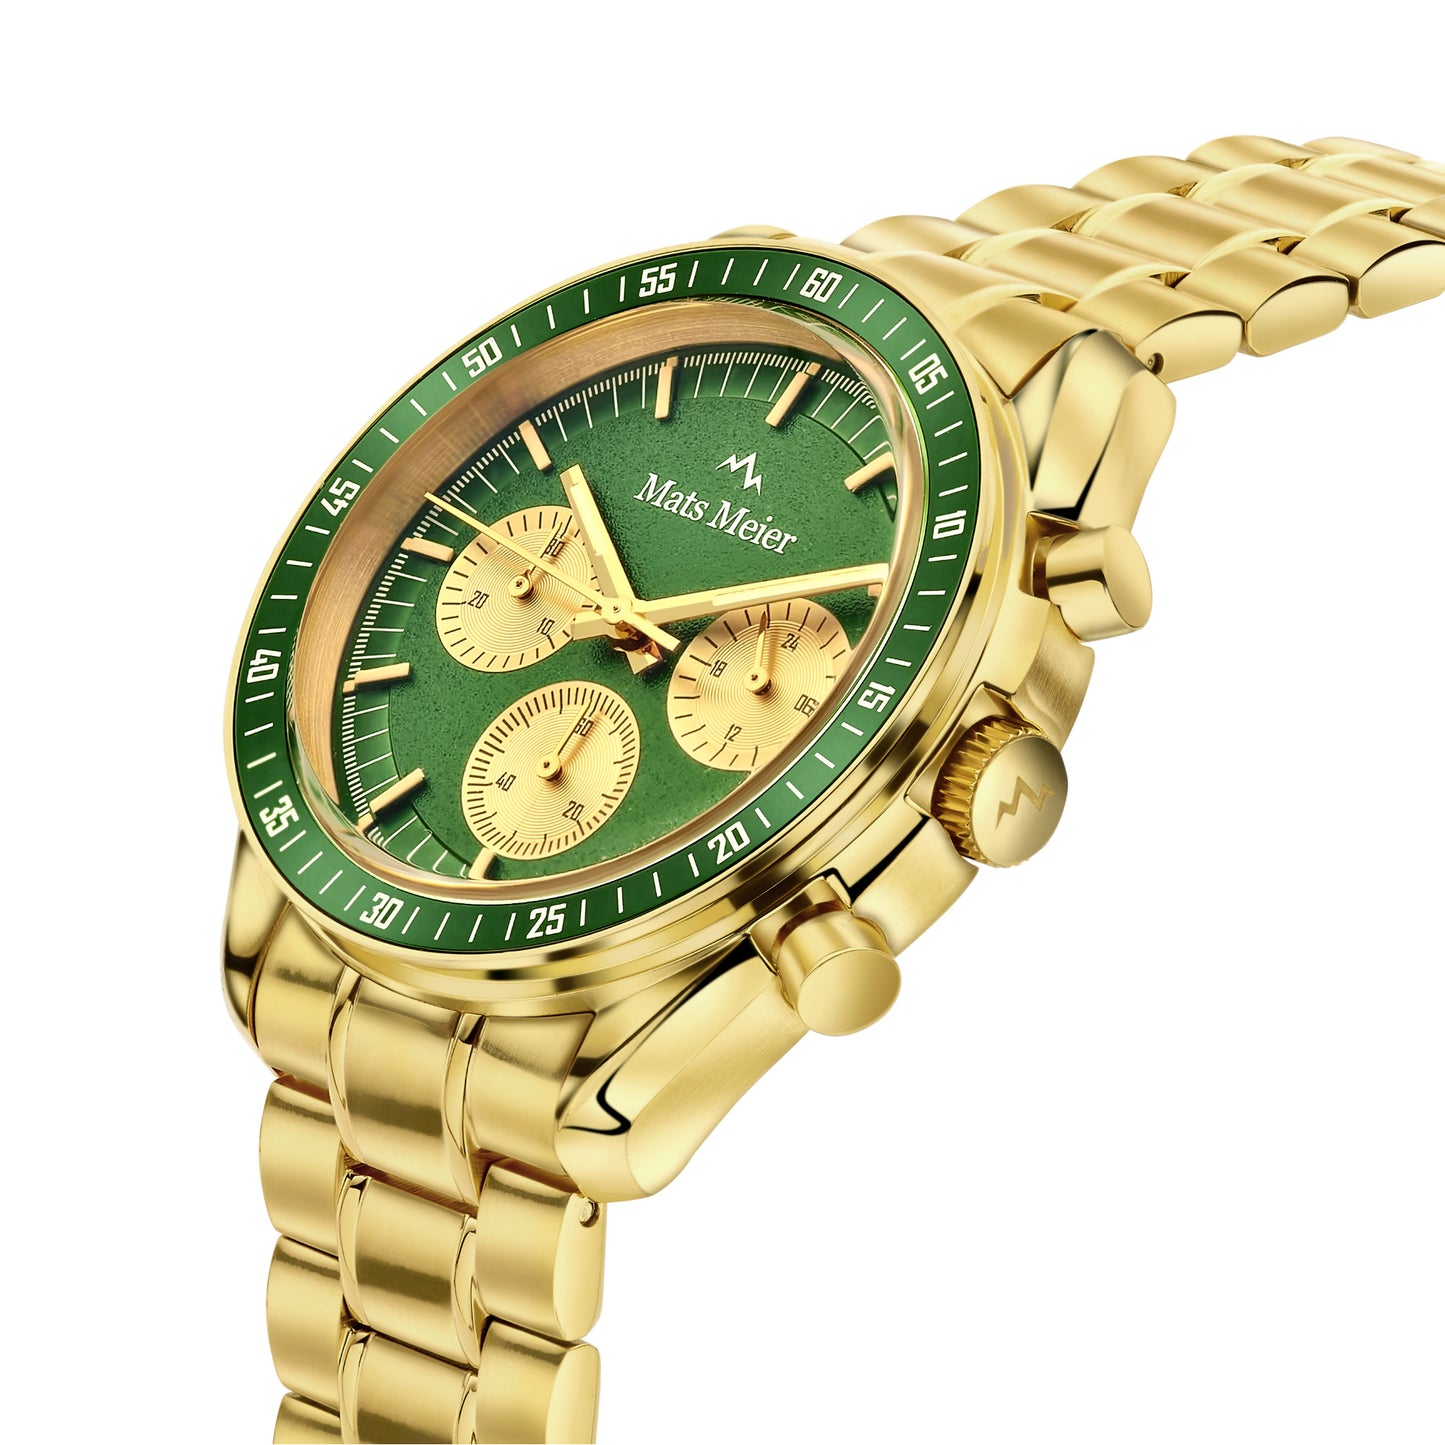 Arosa Racing cronografo orologio da uomo color oro e verde